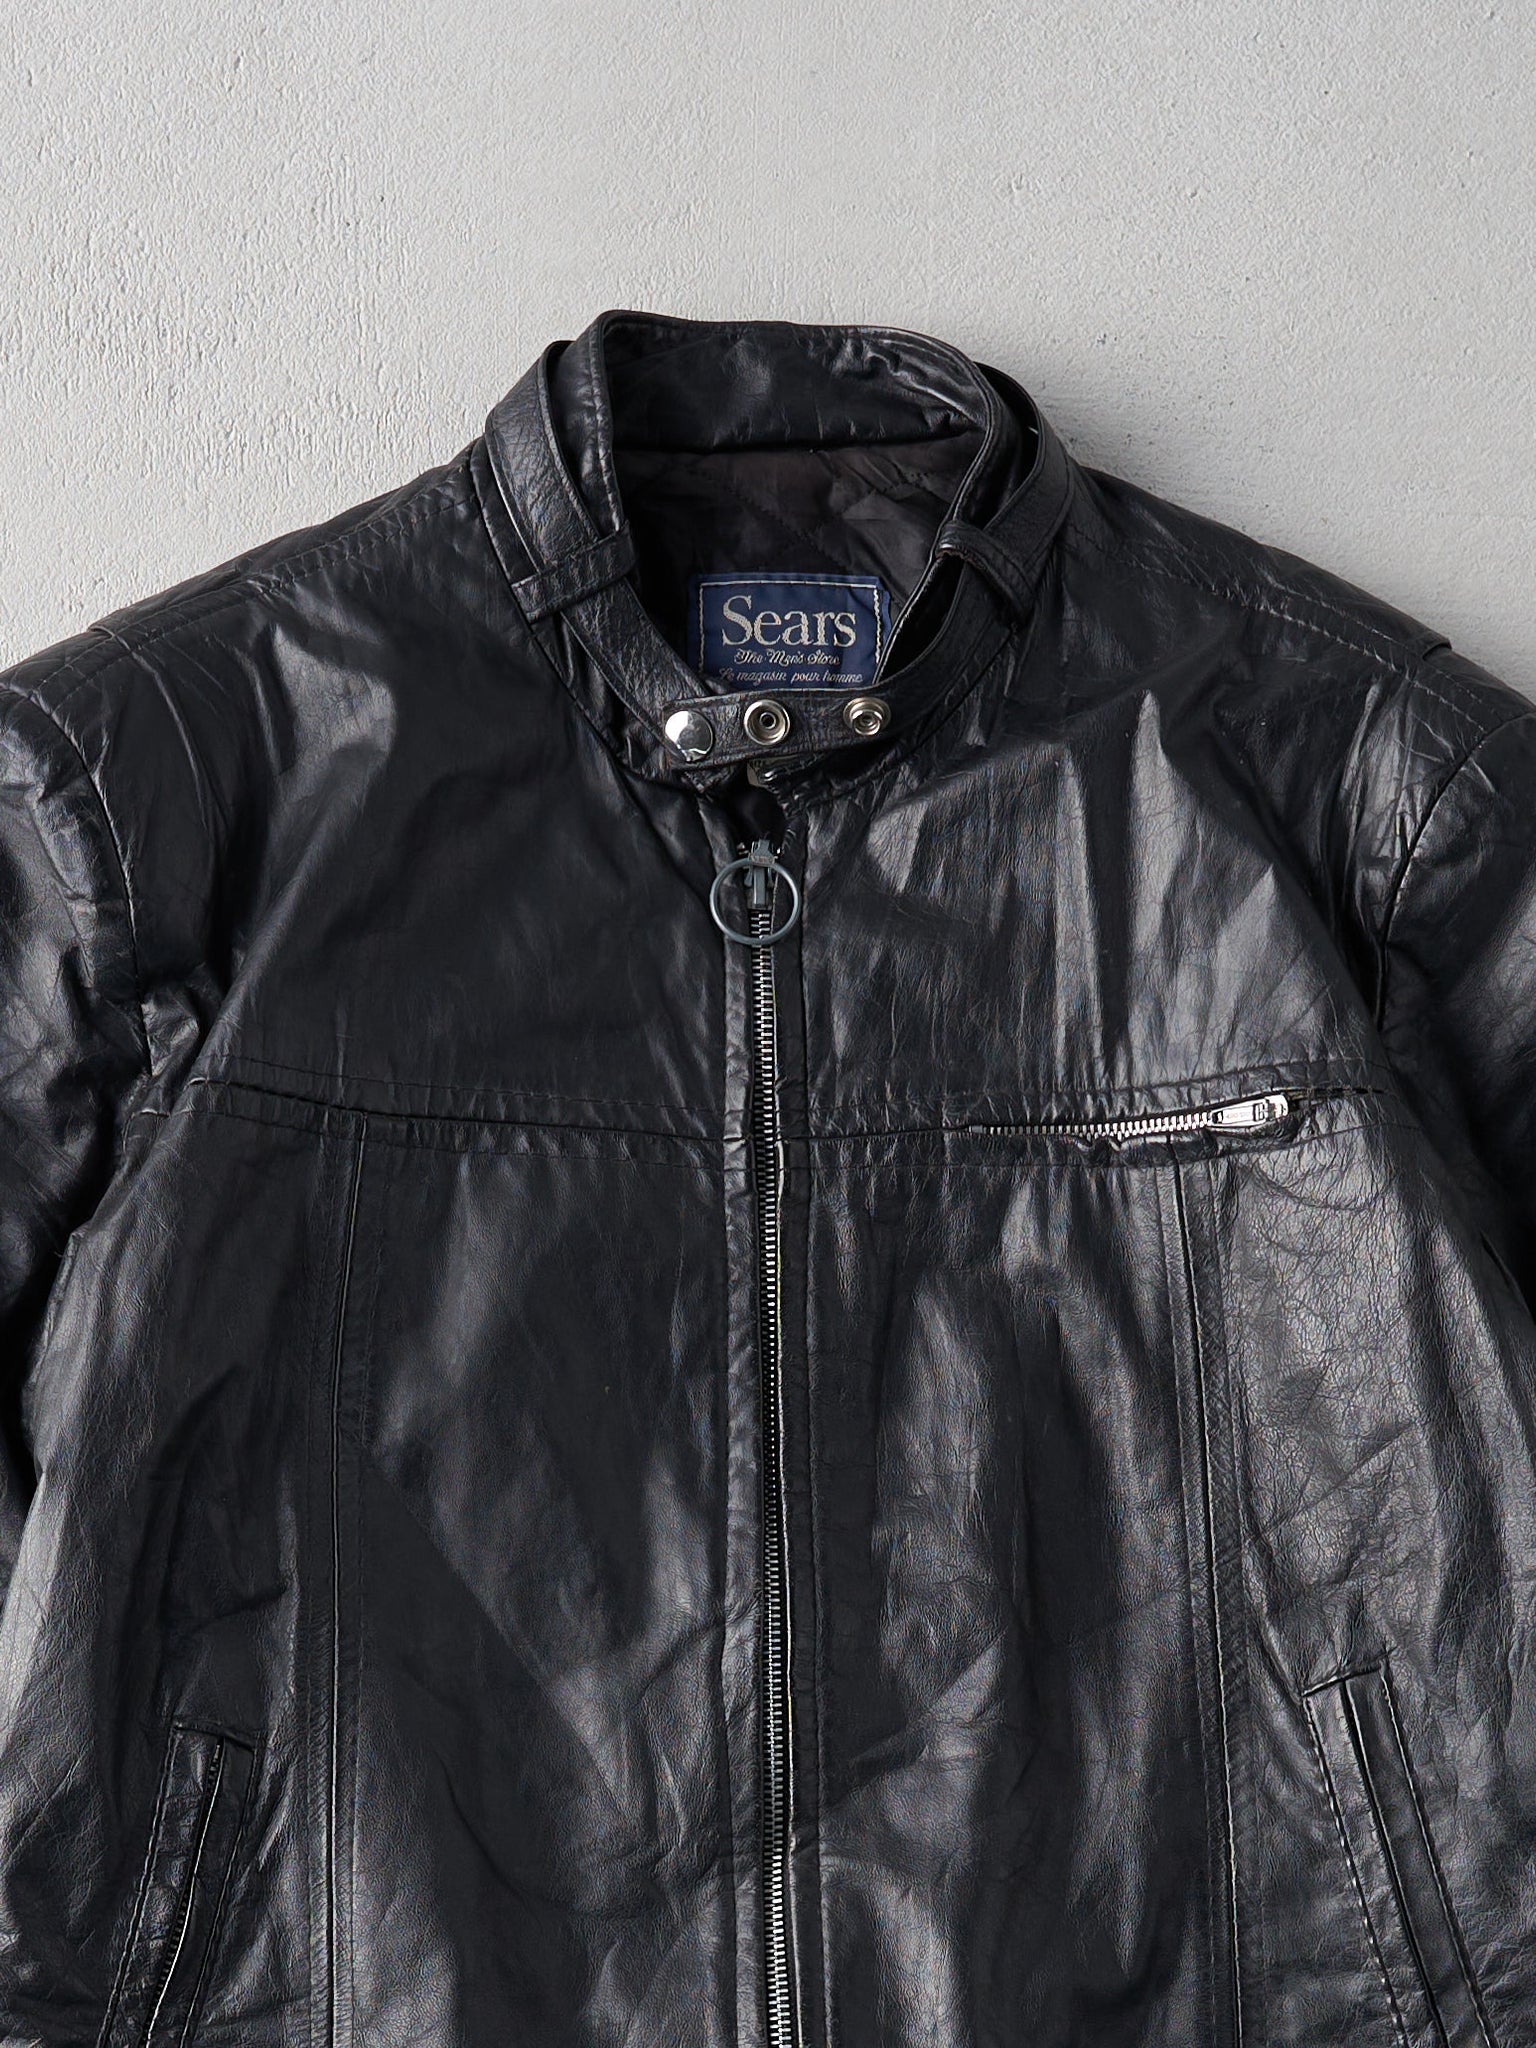 Vintage 80s Black Leather Biker Jacket (M)